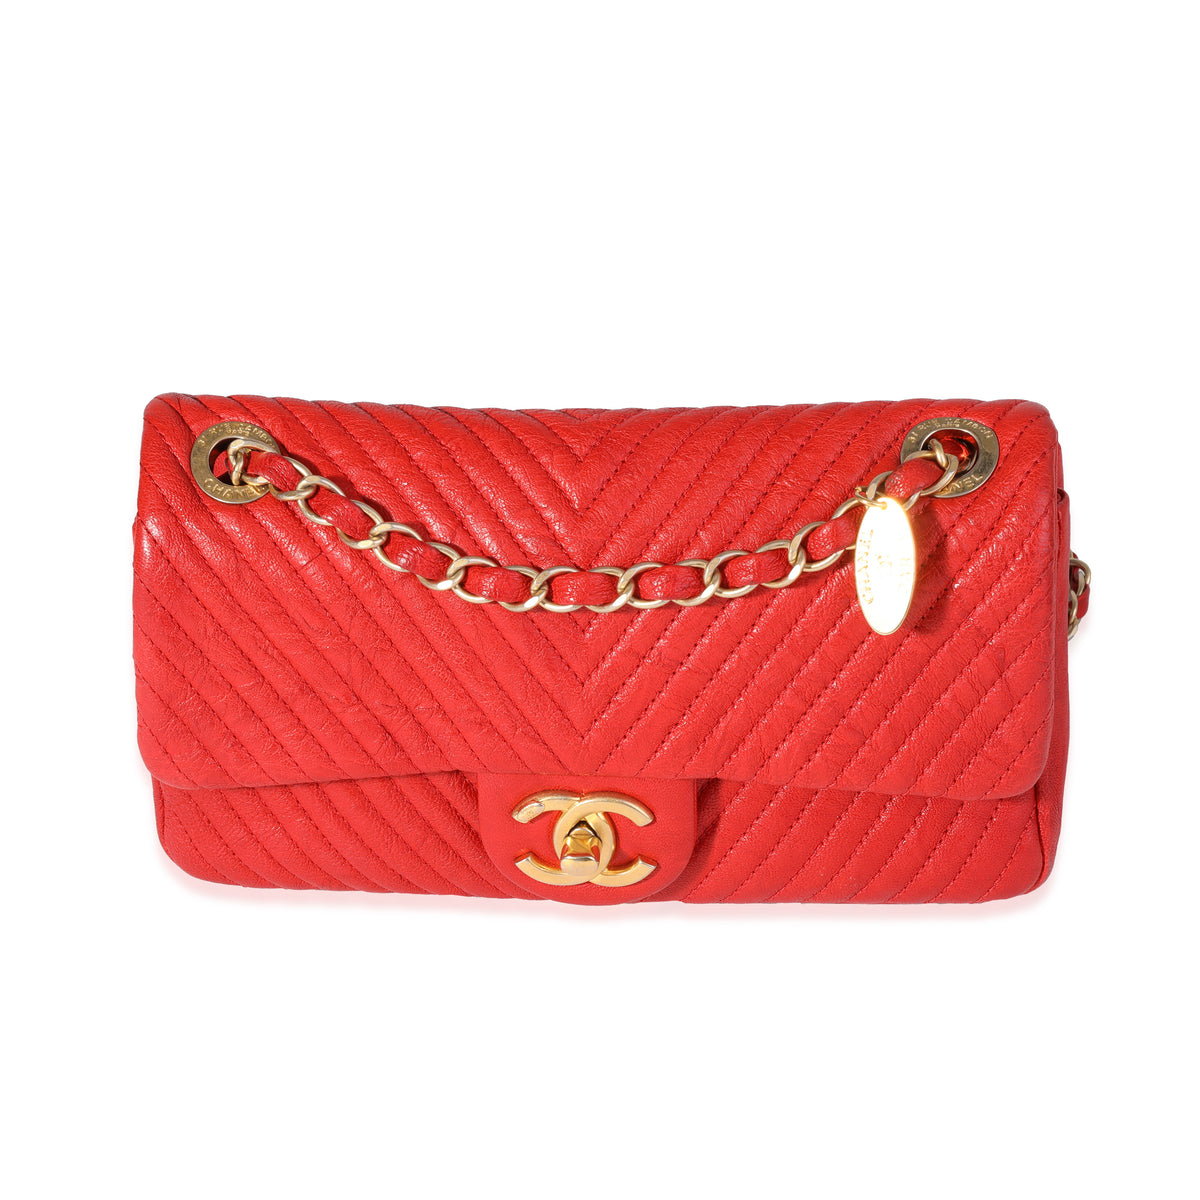 Chanel Red Chevron Wrinkled Leather Mini Rectangular Medallion Flap Bag